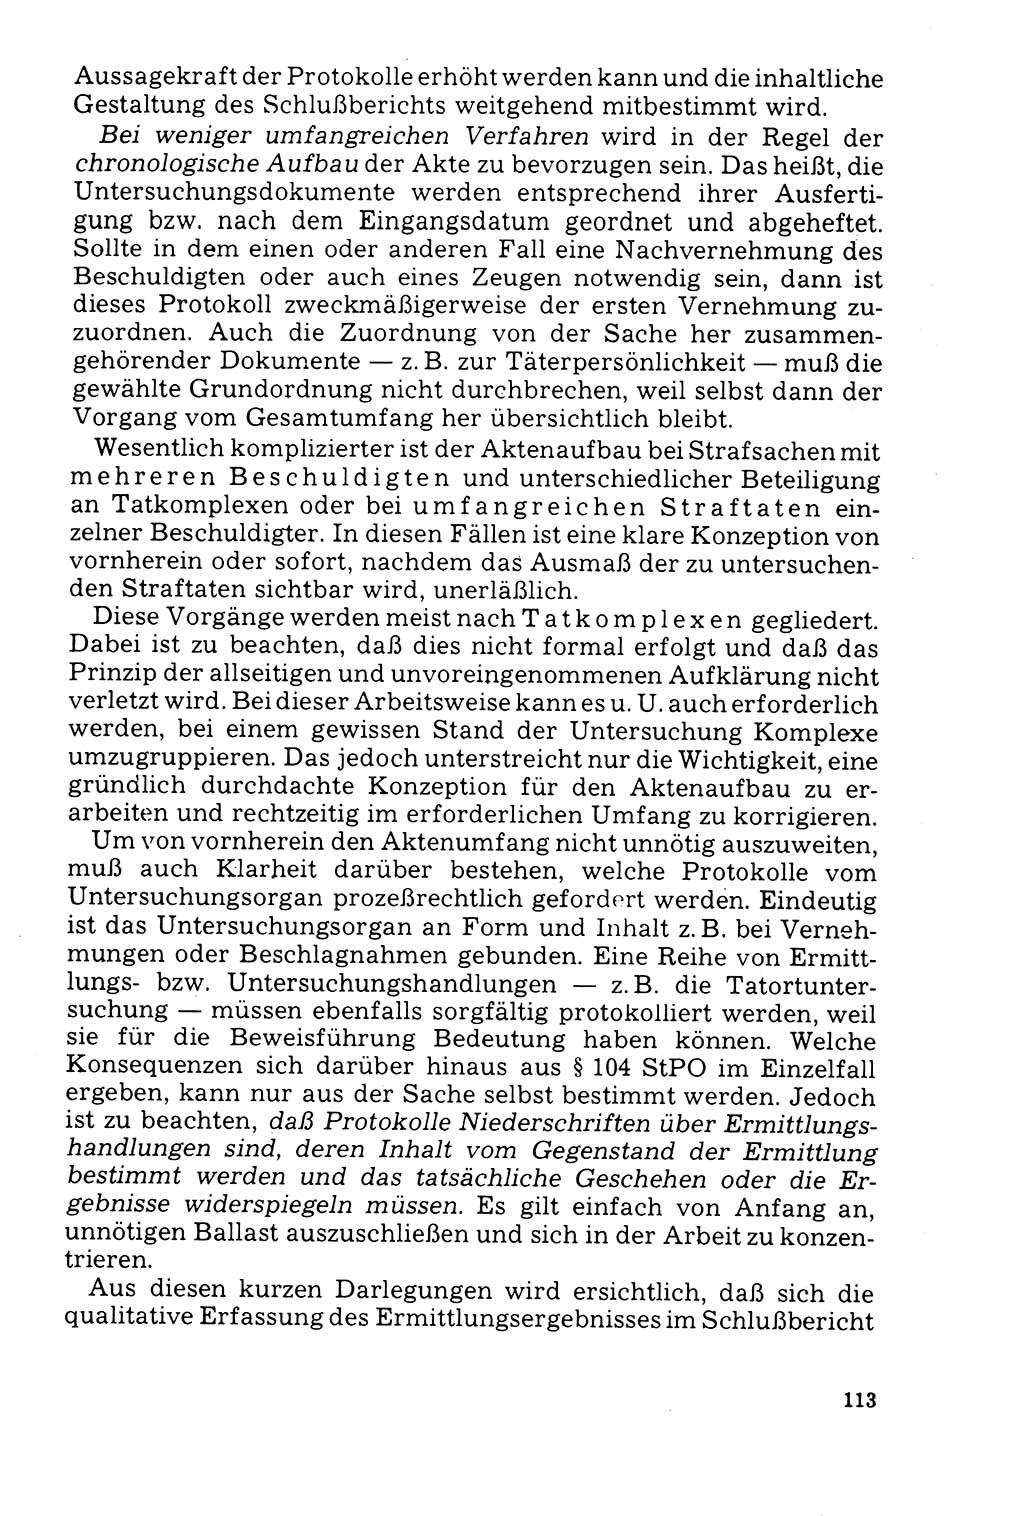 Der Abschluß des Ermittlungsverfahrens [Deutsche Demokratische Republik (DDR)] 1978, Seite 113 (Abschl. EV DDR 1978, S. 113)